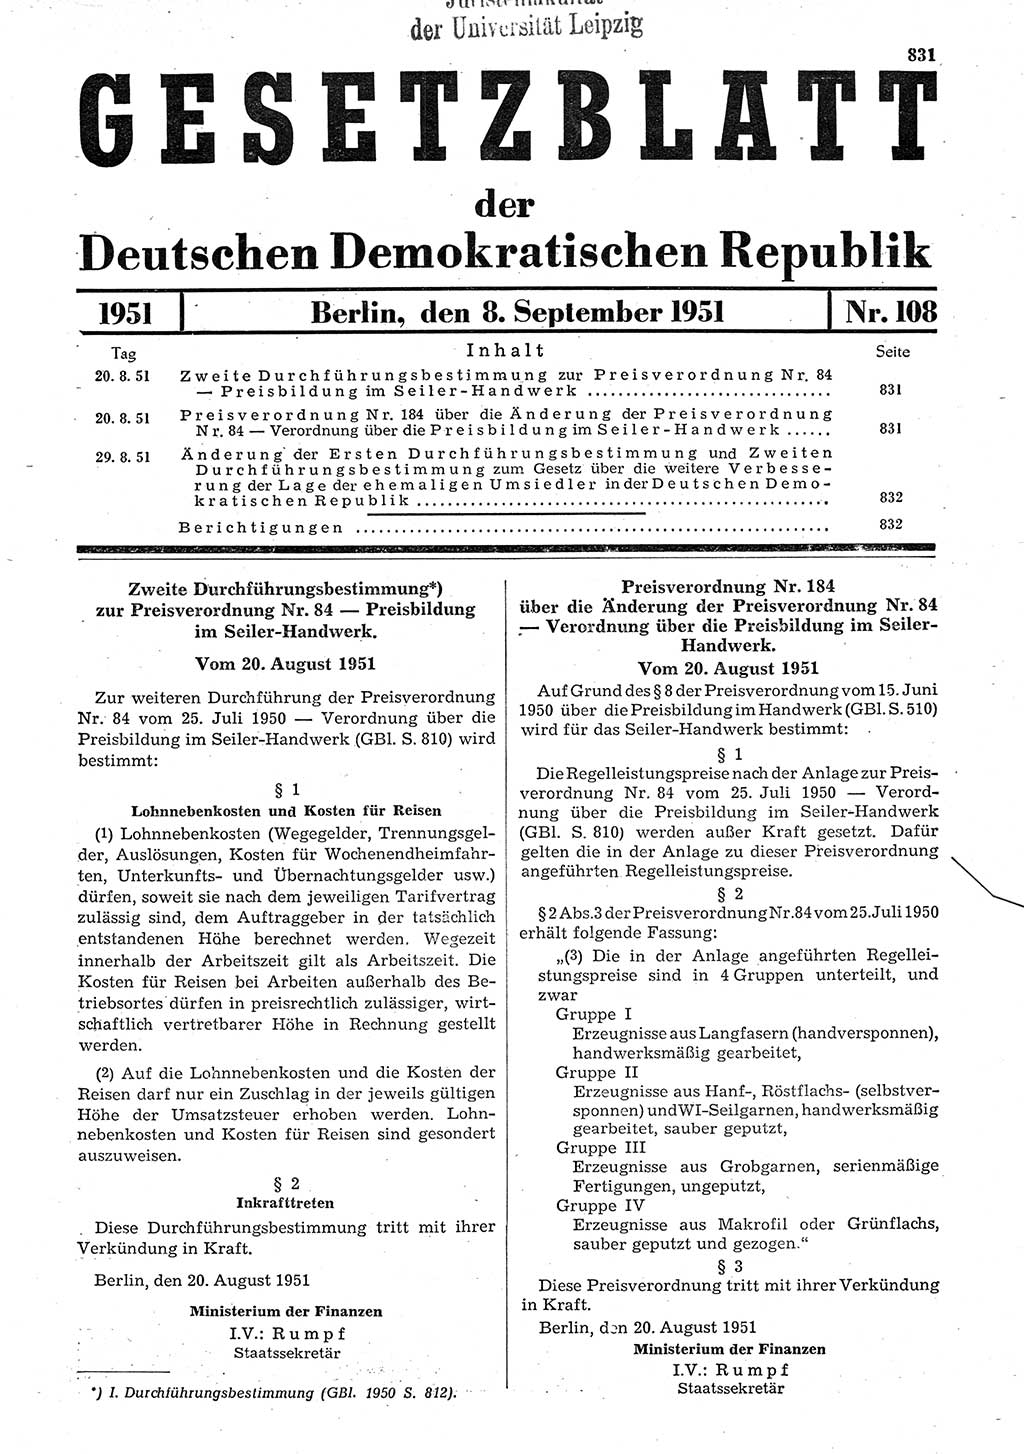 Gesetzblatt (GBl.) der Deutschen Demokratischen Republik (DDR) 1951, Seite 831 (GBl. DDR 1951, S. 831)